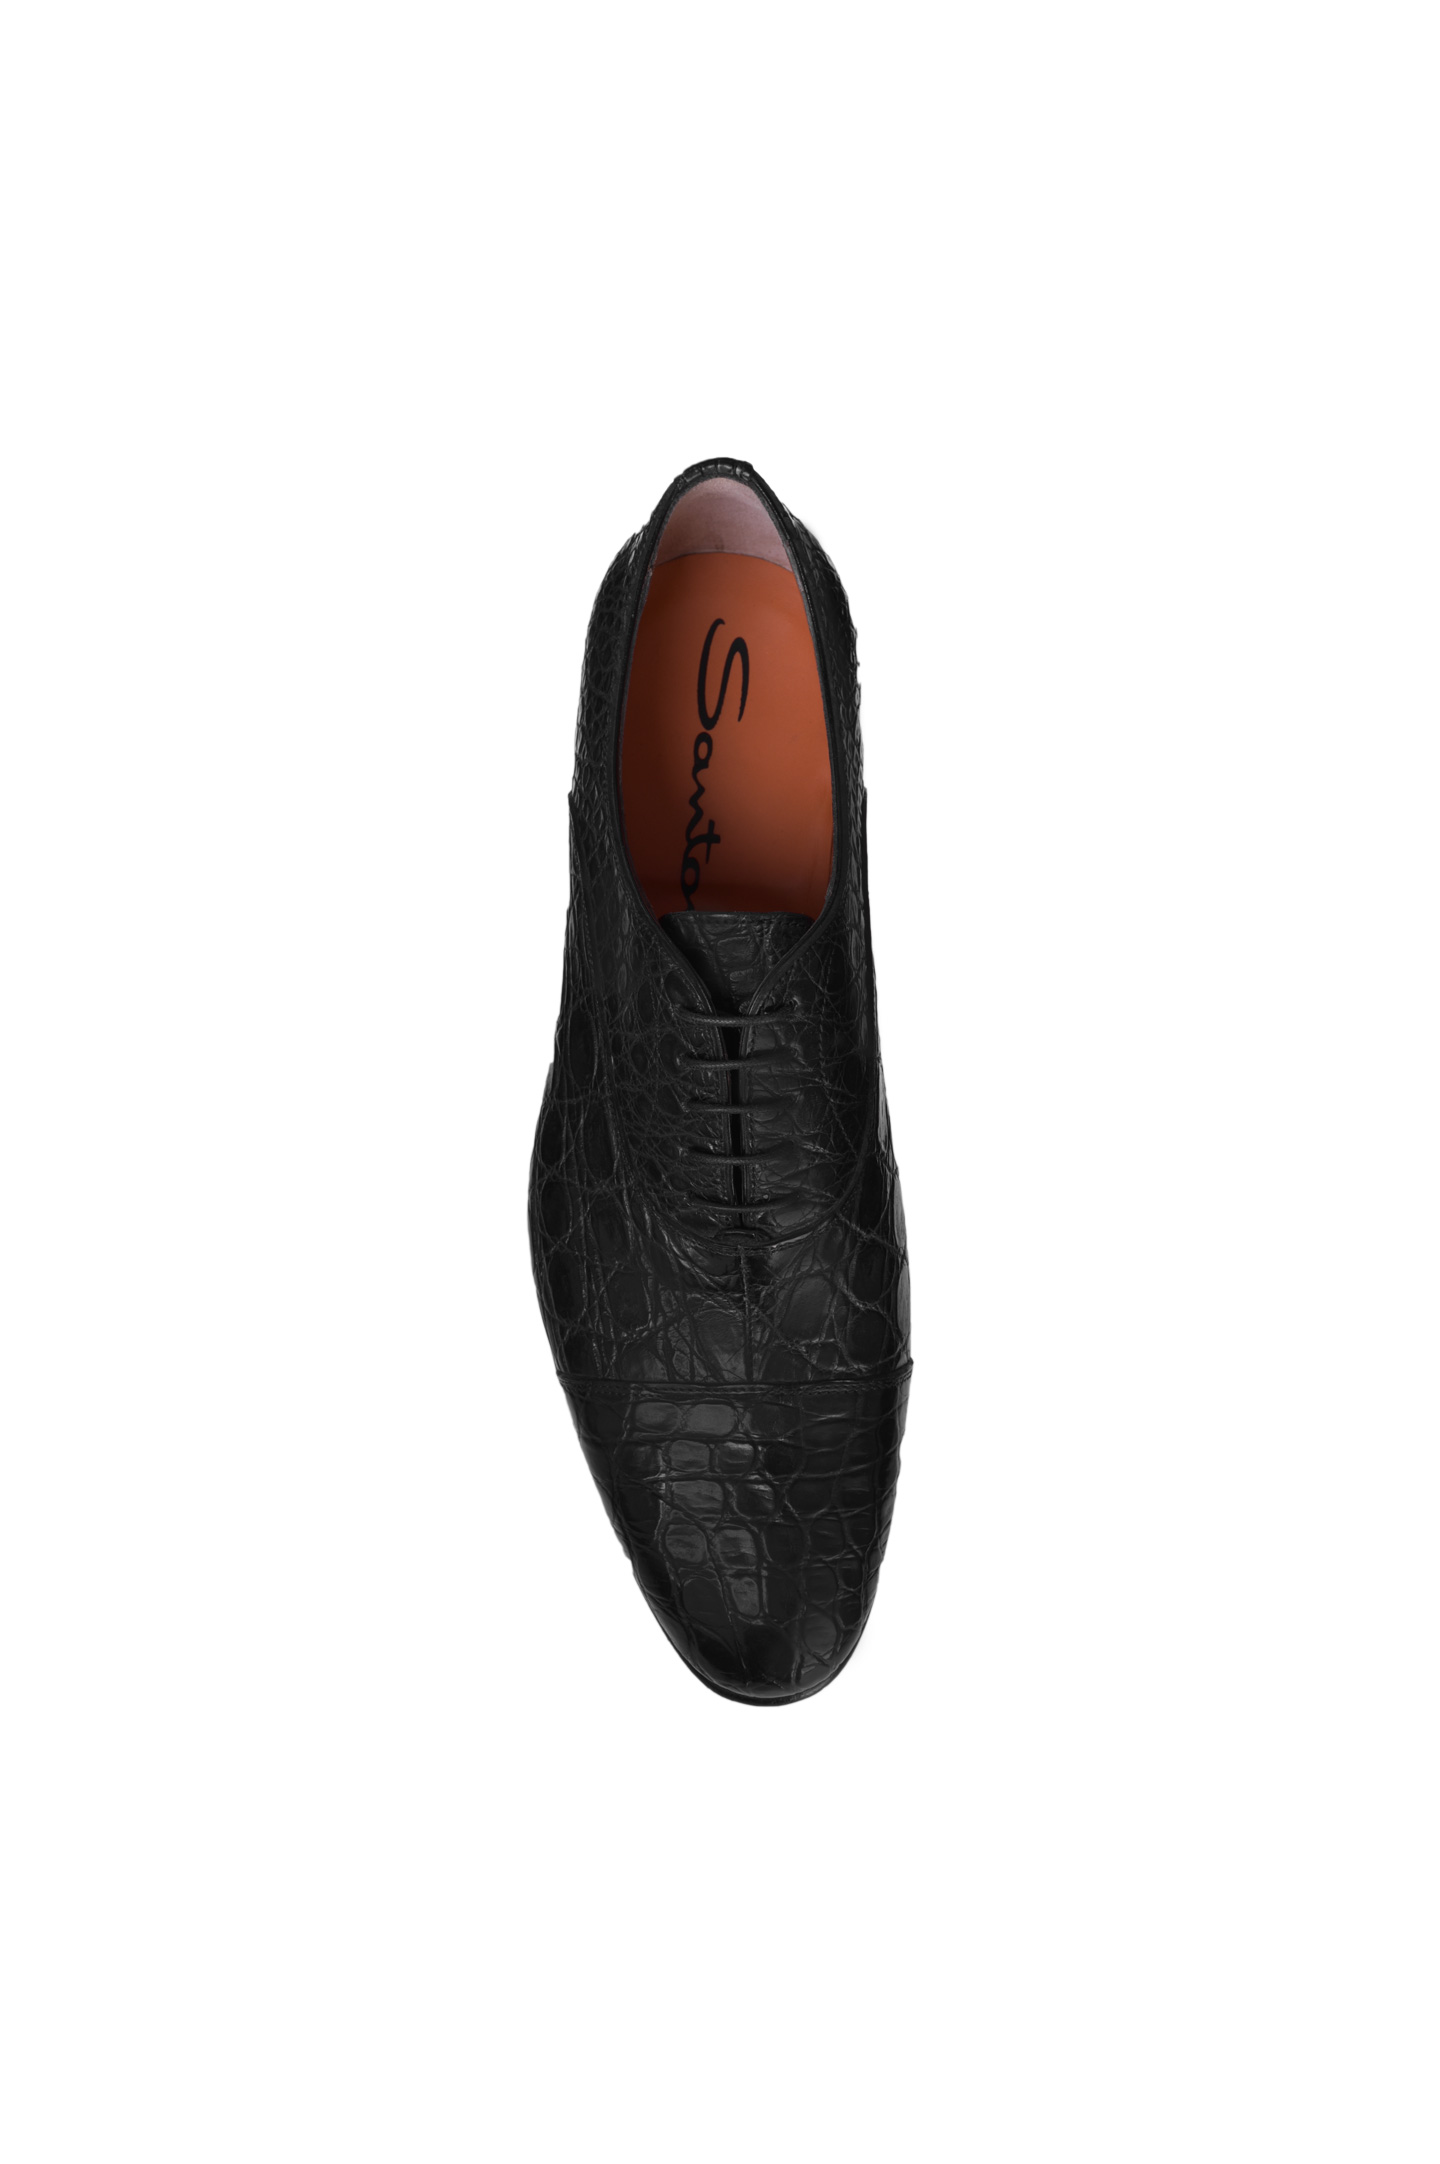 Туфли SANTONI MPWG13106BA7GCFFN01, цвет: Черный, Мужской